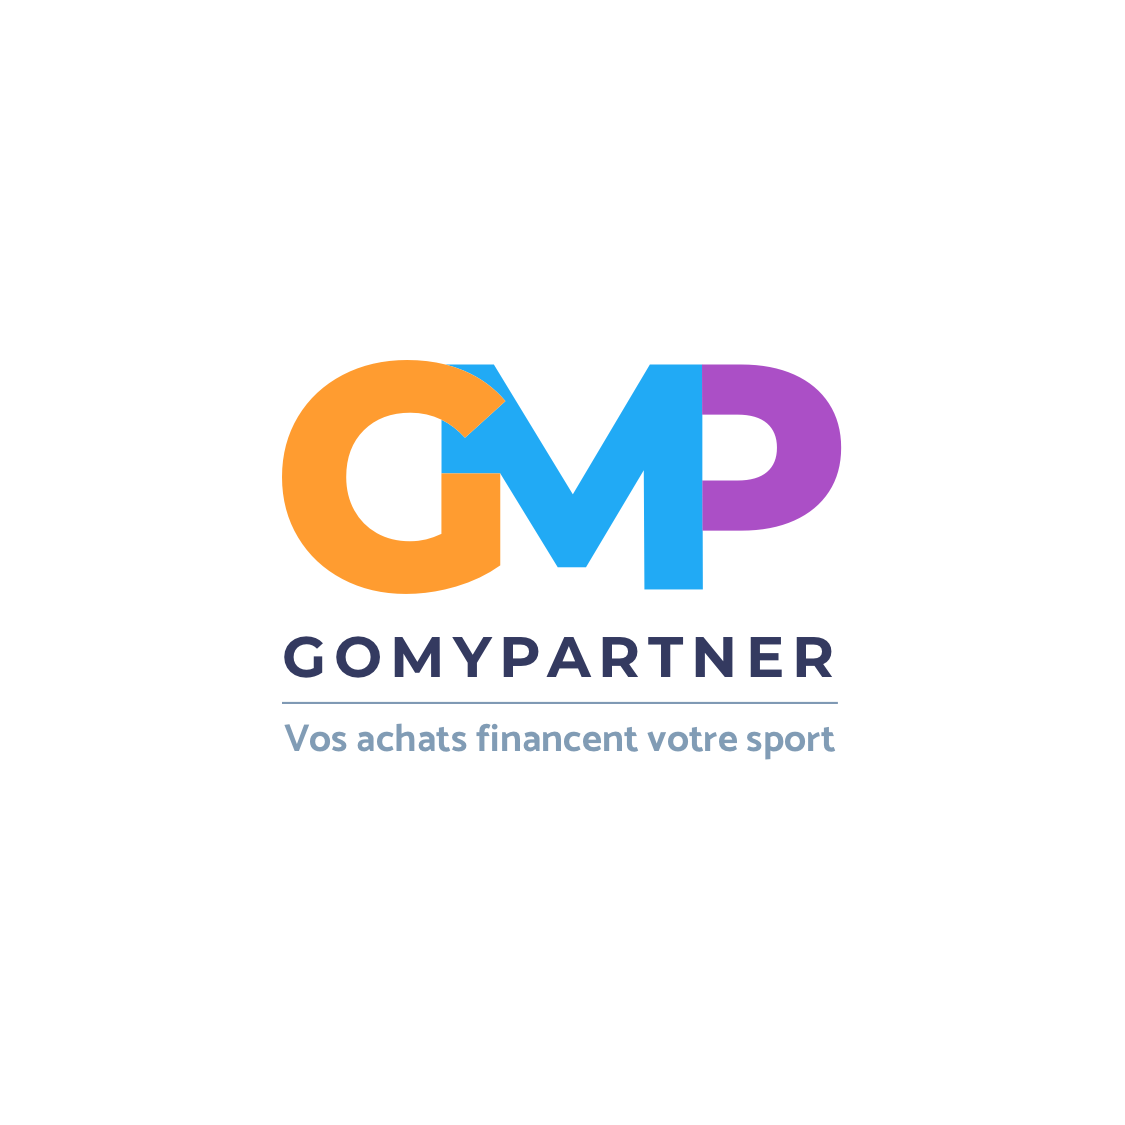 Logo GMP fondclair